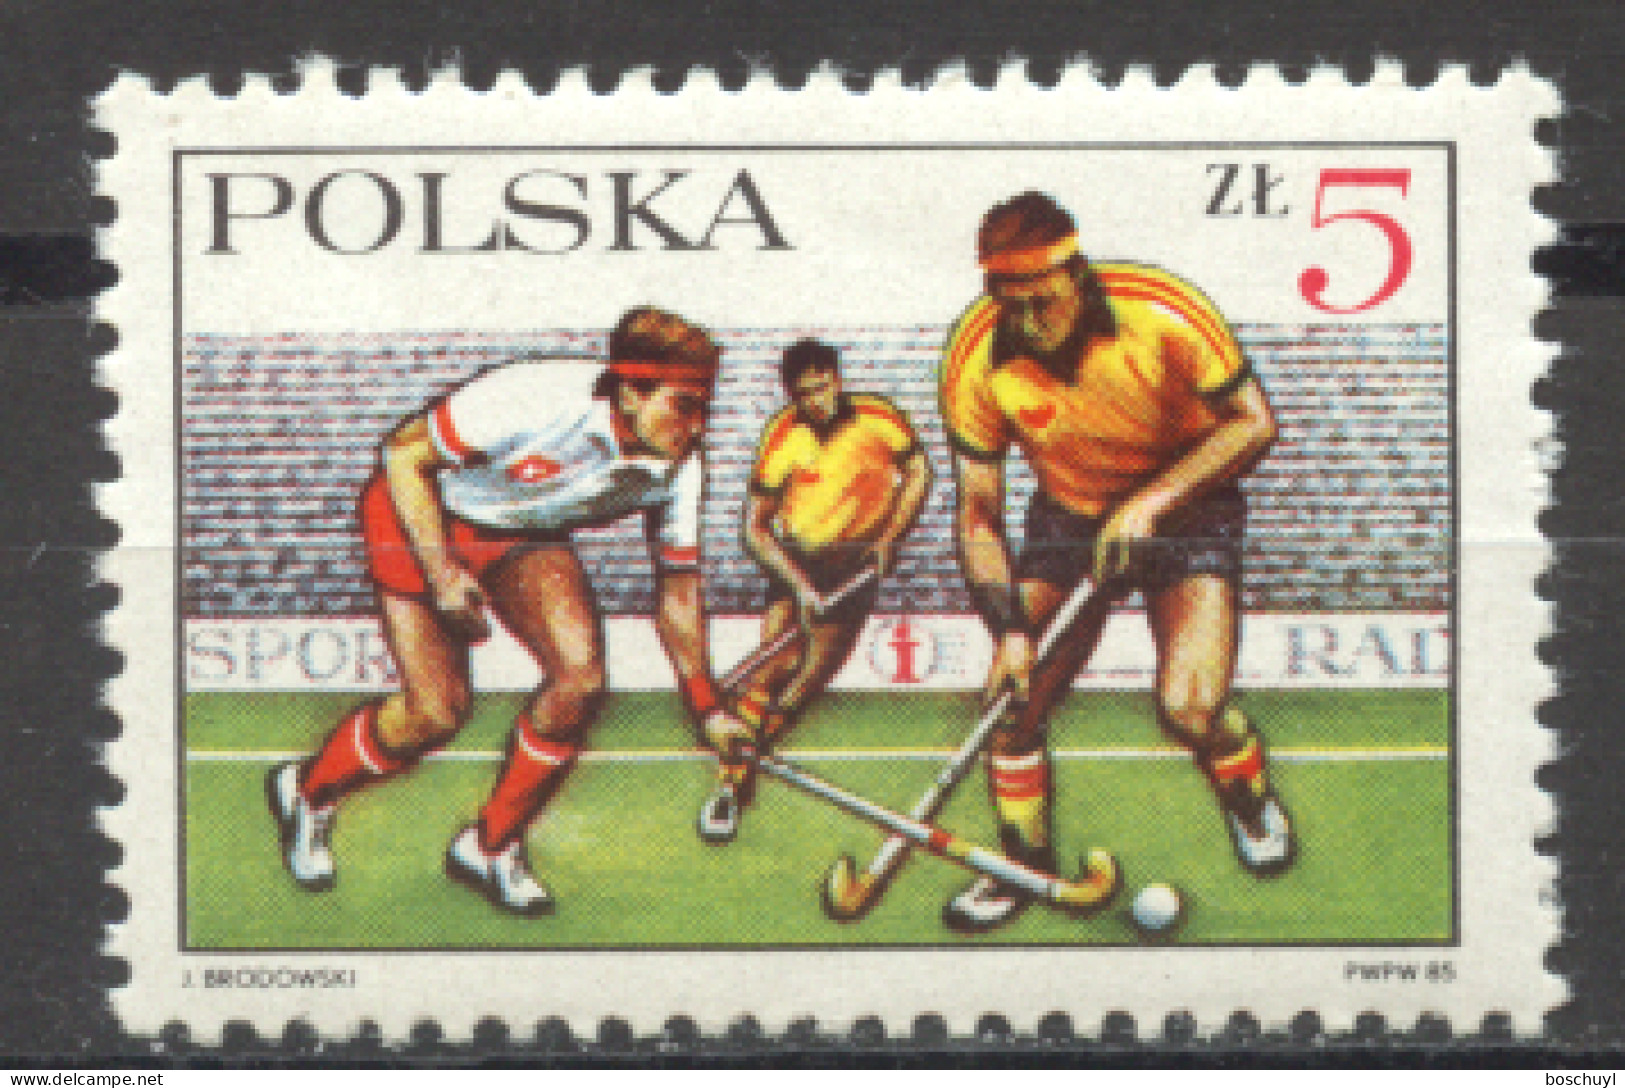 Poland, 1985, Field Hockey, Sports, MNH, Michel 2990 - Ongebruikt